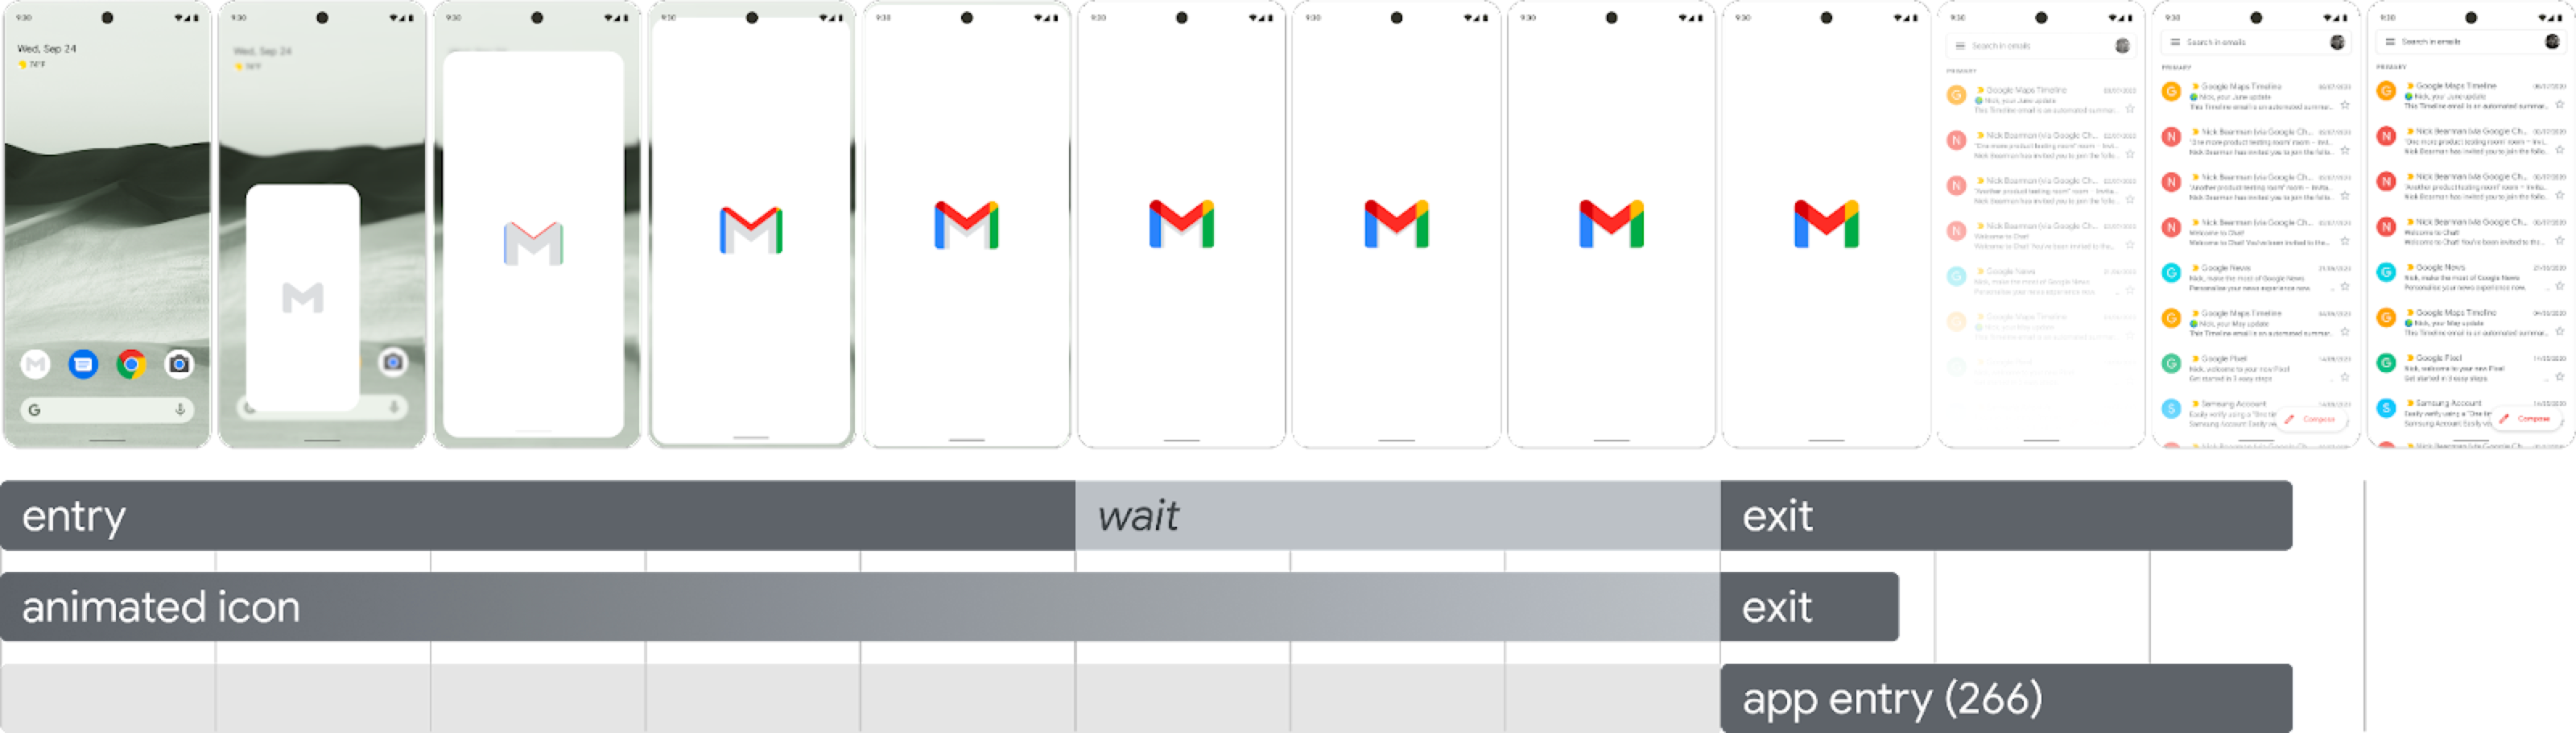 Imagen que muestra la secuencia de inicio en doce fotogramas consecutivos; comienza con el toque del ícono de selector y llena la pantalla a medida que se agranda.